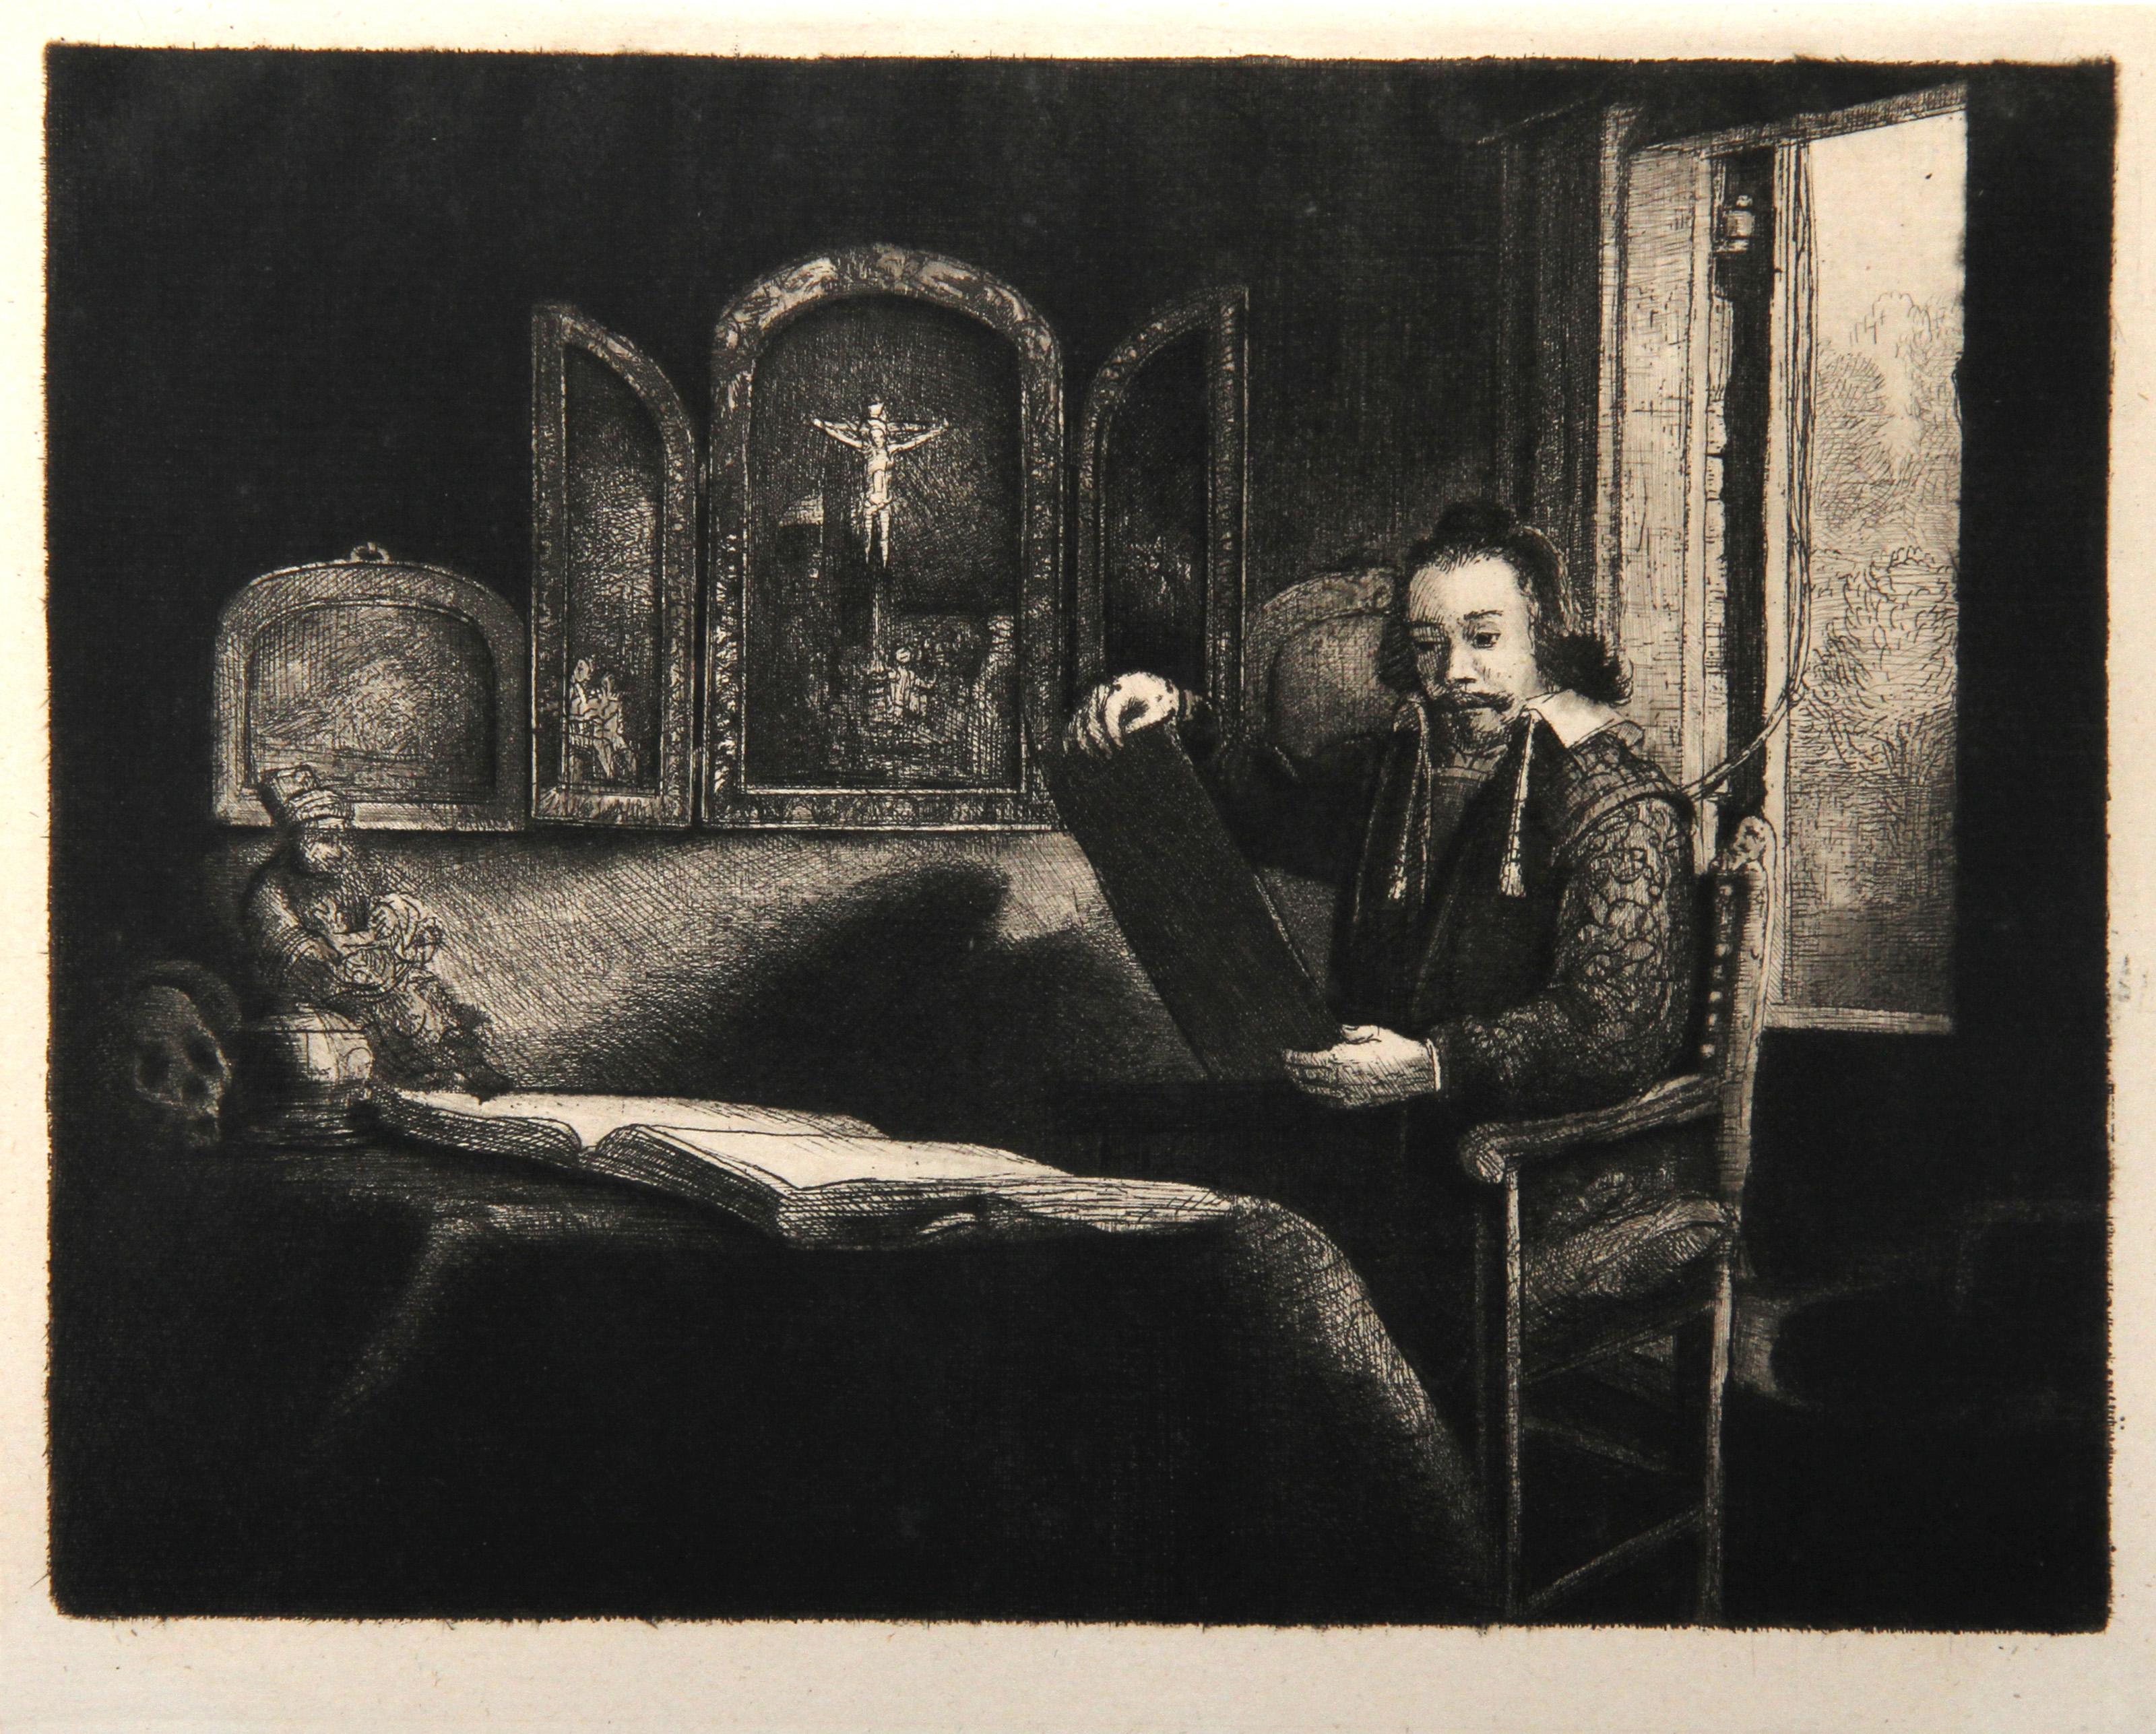 Künstler: Rembrandt van Rijn, nach Amand Durand, Niederländer (1606 - 1669) -  Abraham Francen, Apotheker (B273), Jahr: 1878 (von Original 1657), Medium: Heliogravüre, Größe: 6.25  x 8.25 in. (15.88  x 20,96 cm), Drucker: Amand Durand, Beschreibung: